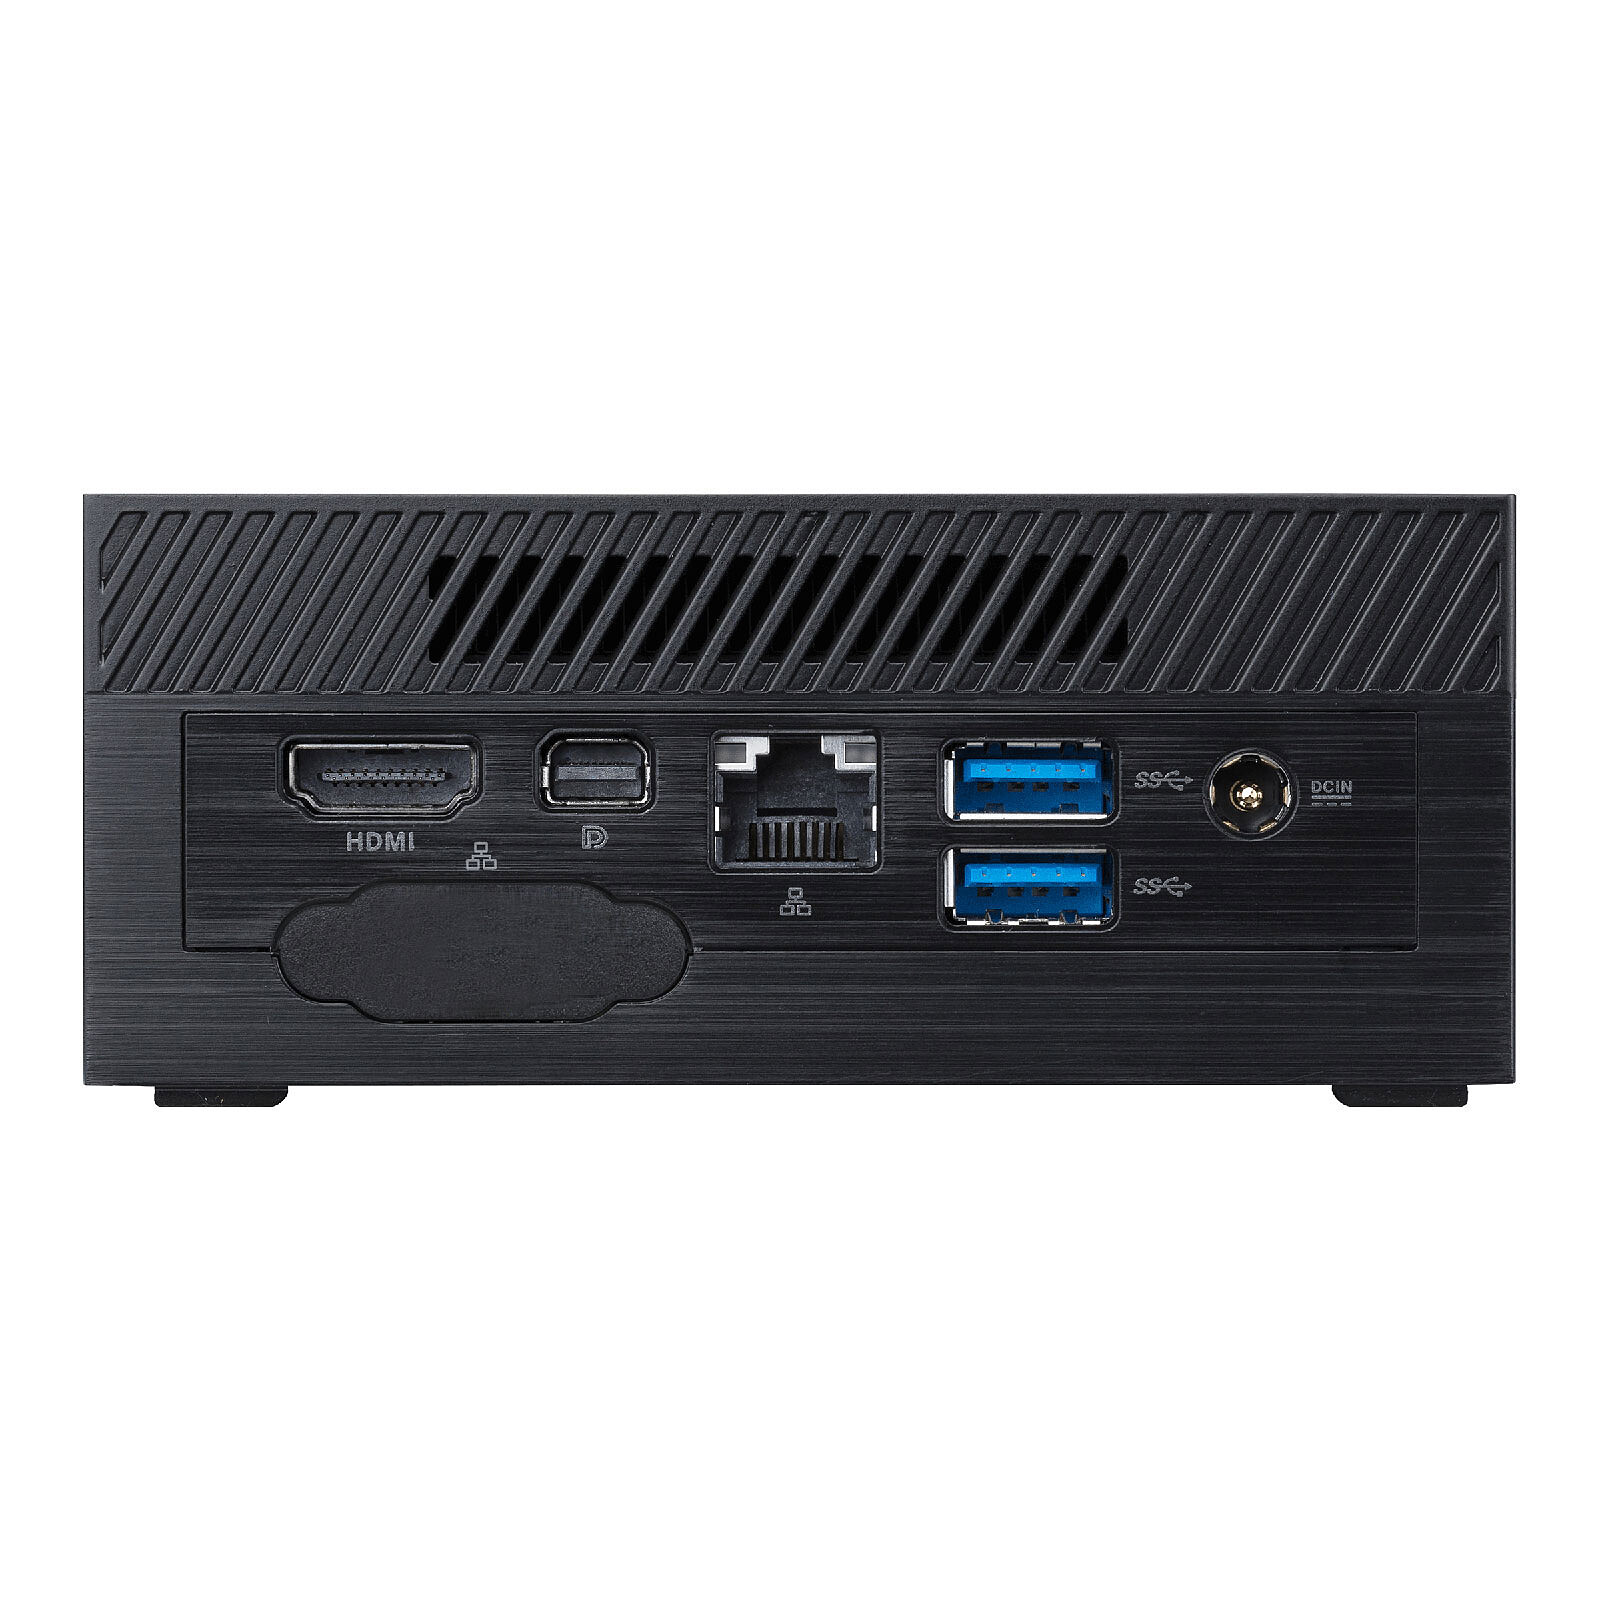 ASUS Mini PC PN41-BBP131MV (90MR00I3-M001H0) - Barebone PC - LDLC